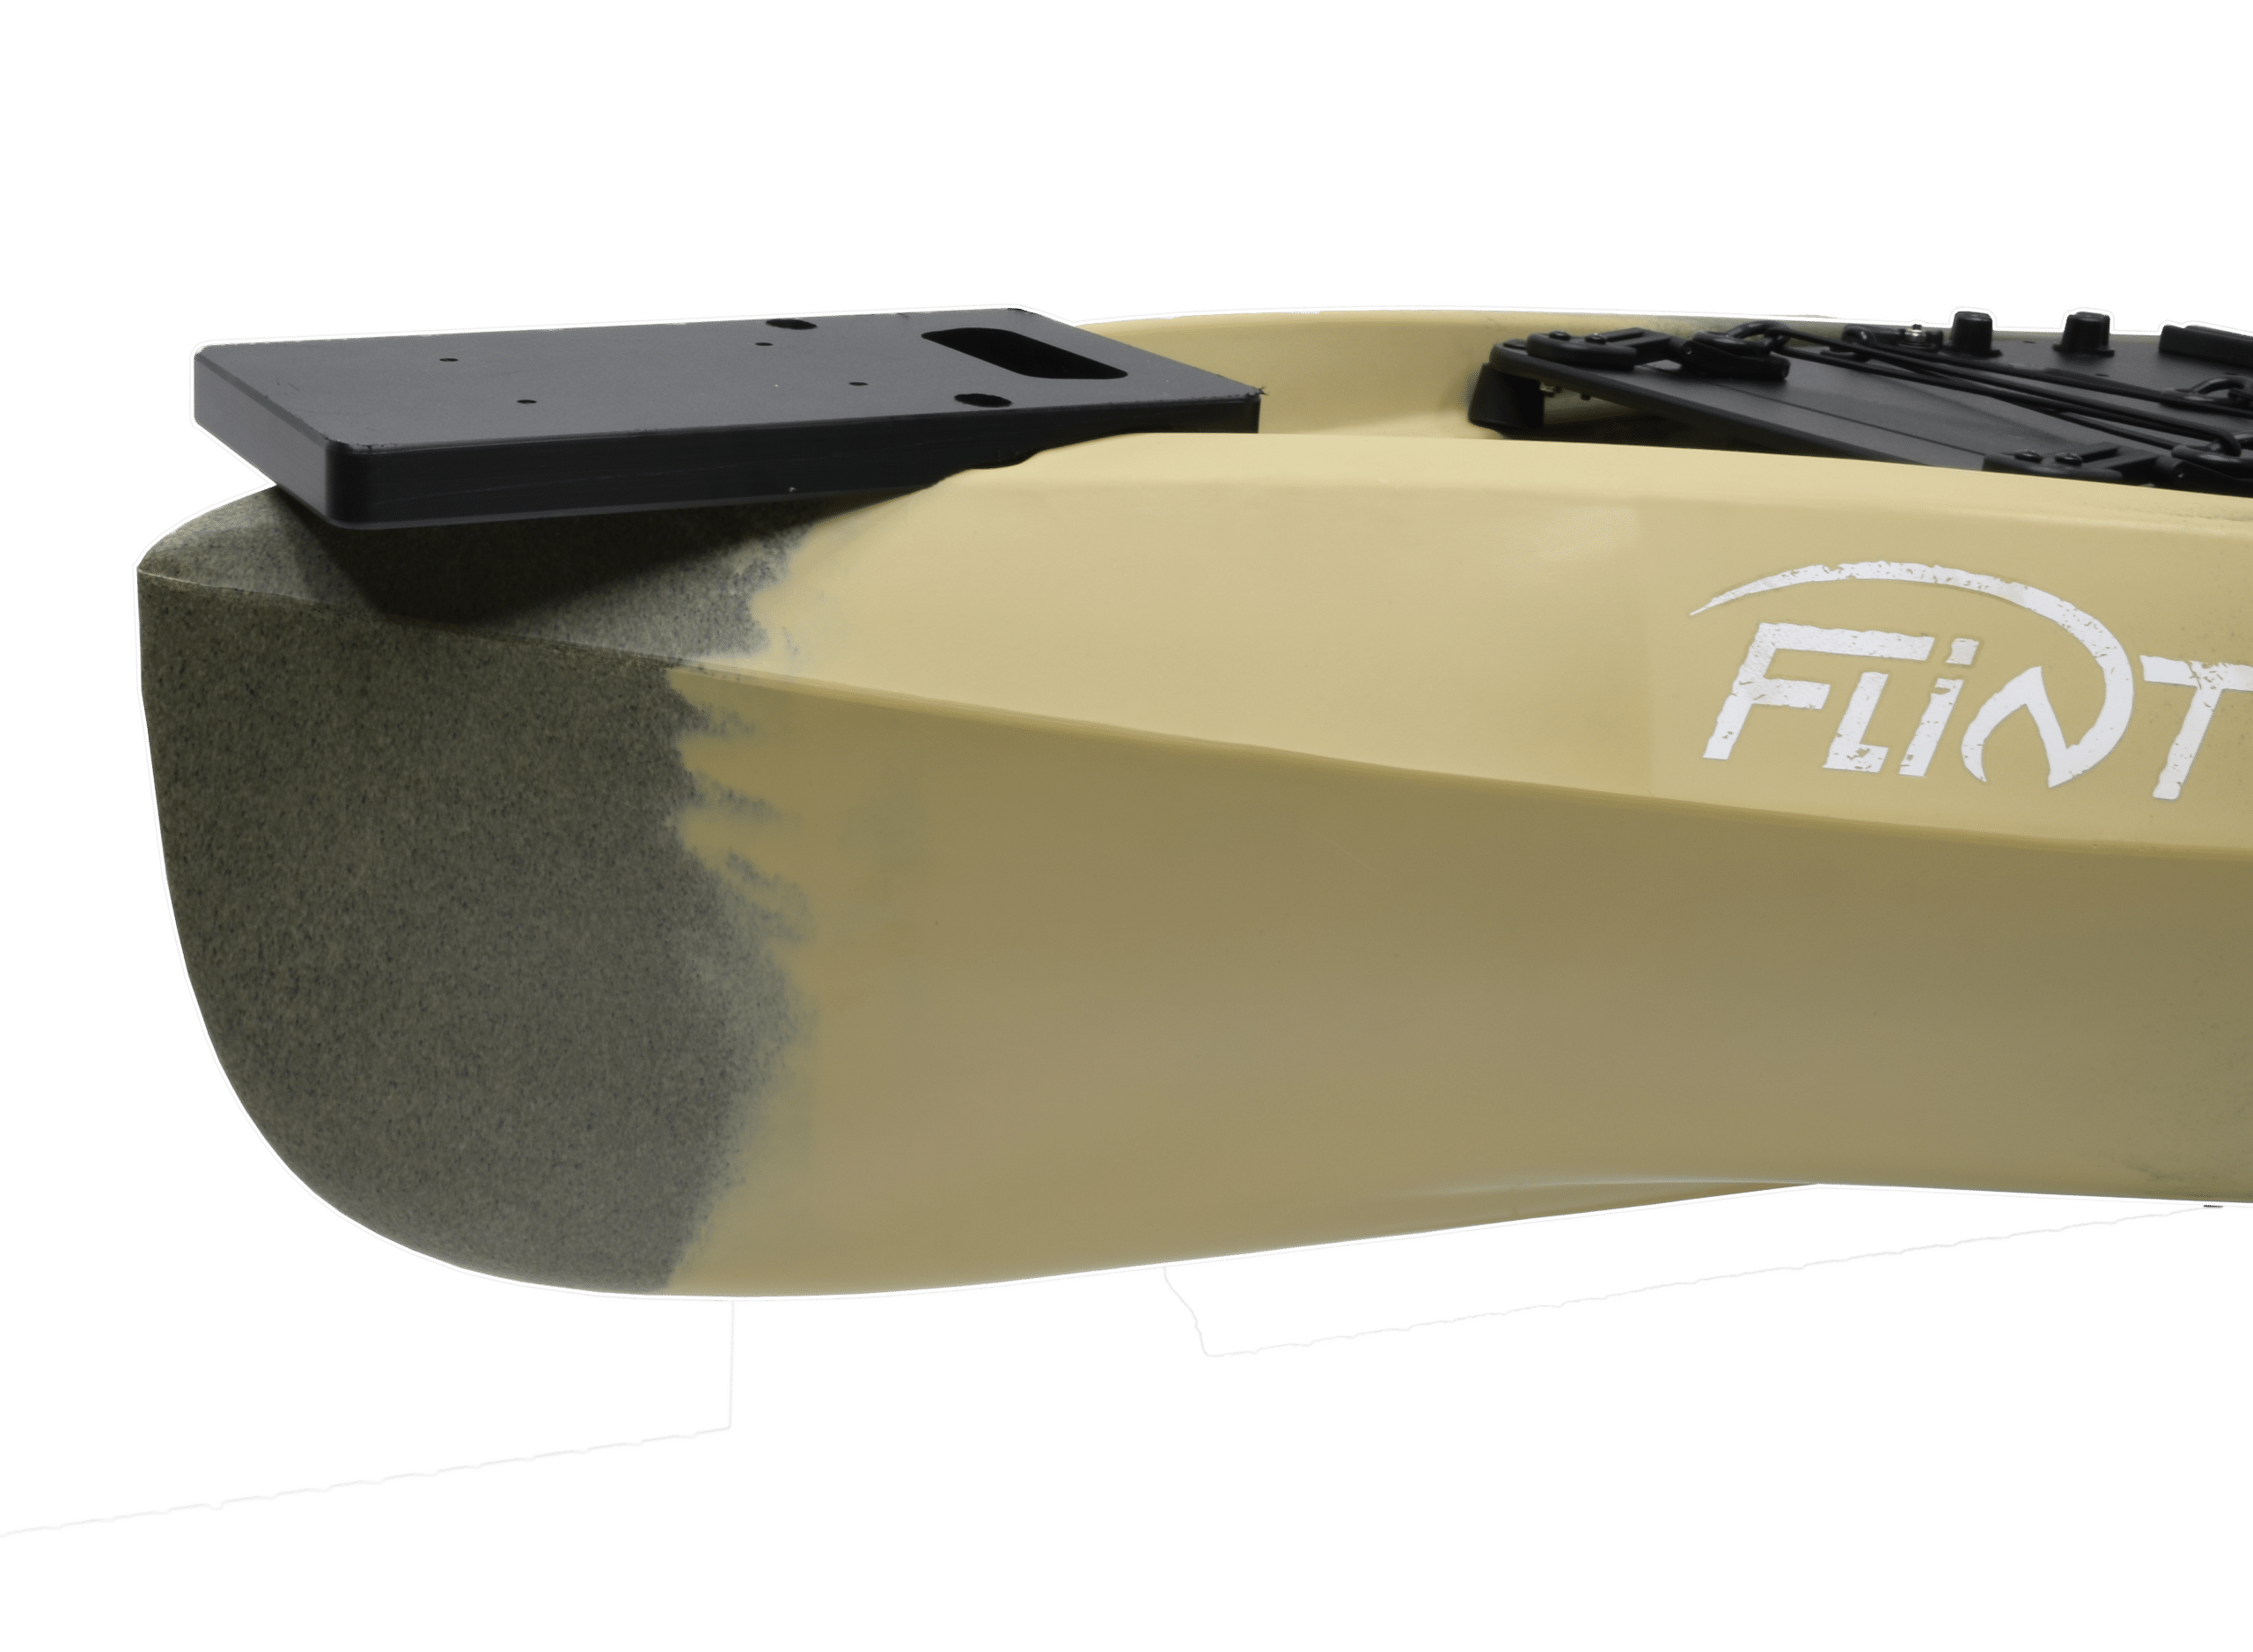 7151 – Flint Bow Motor Mount Kit, Kayaks, Fishing, Hunting